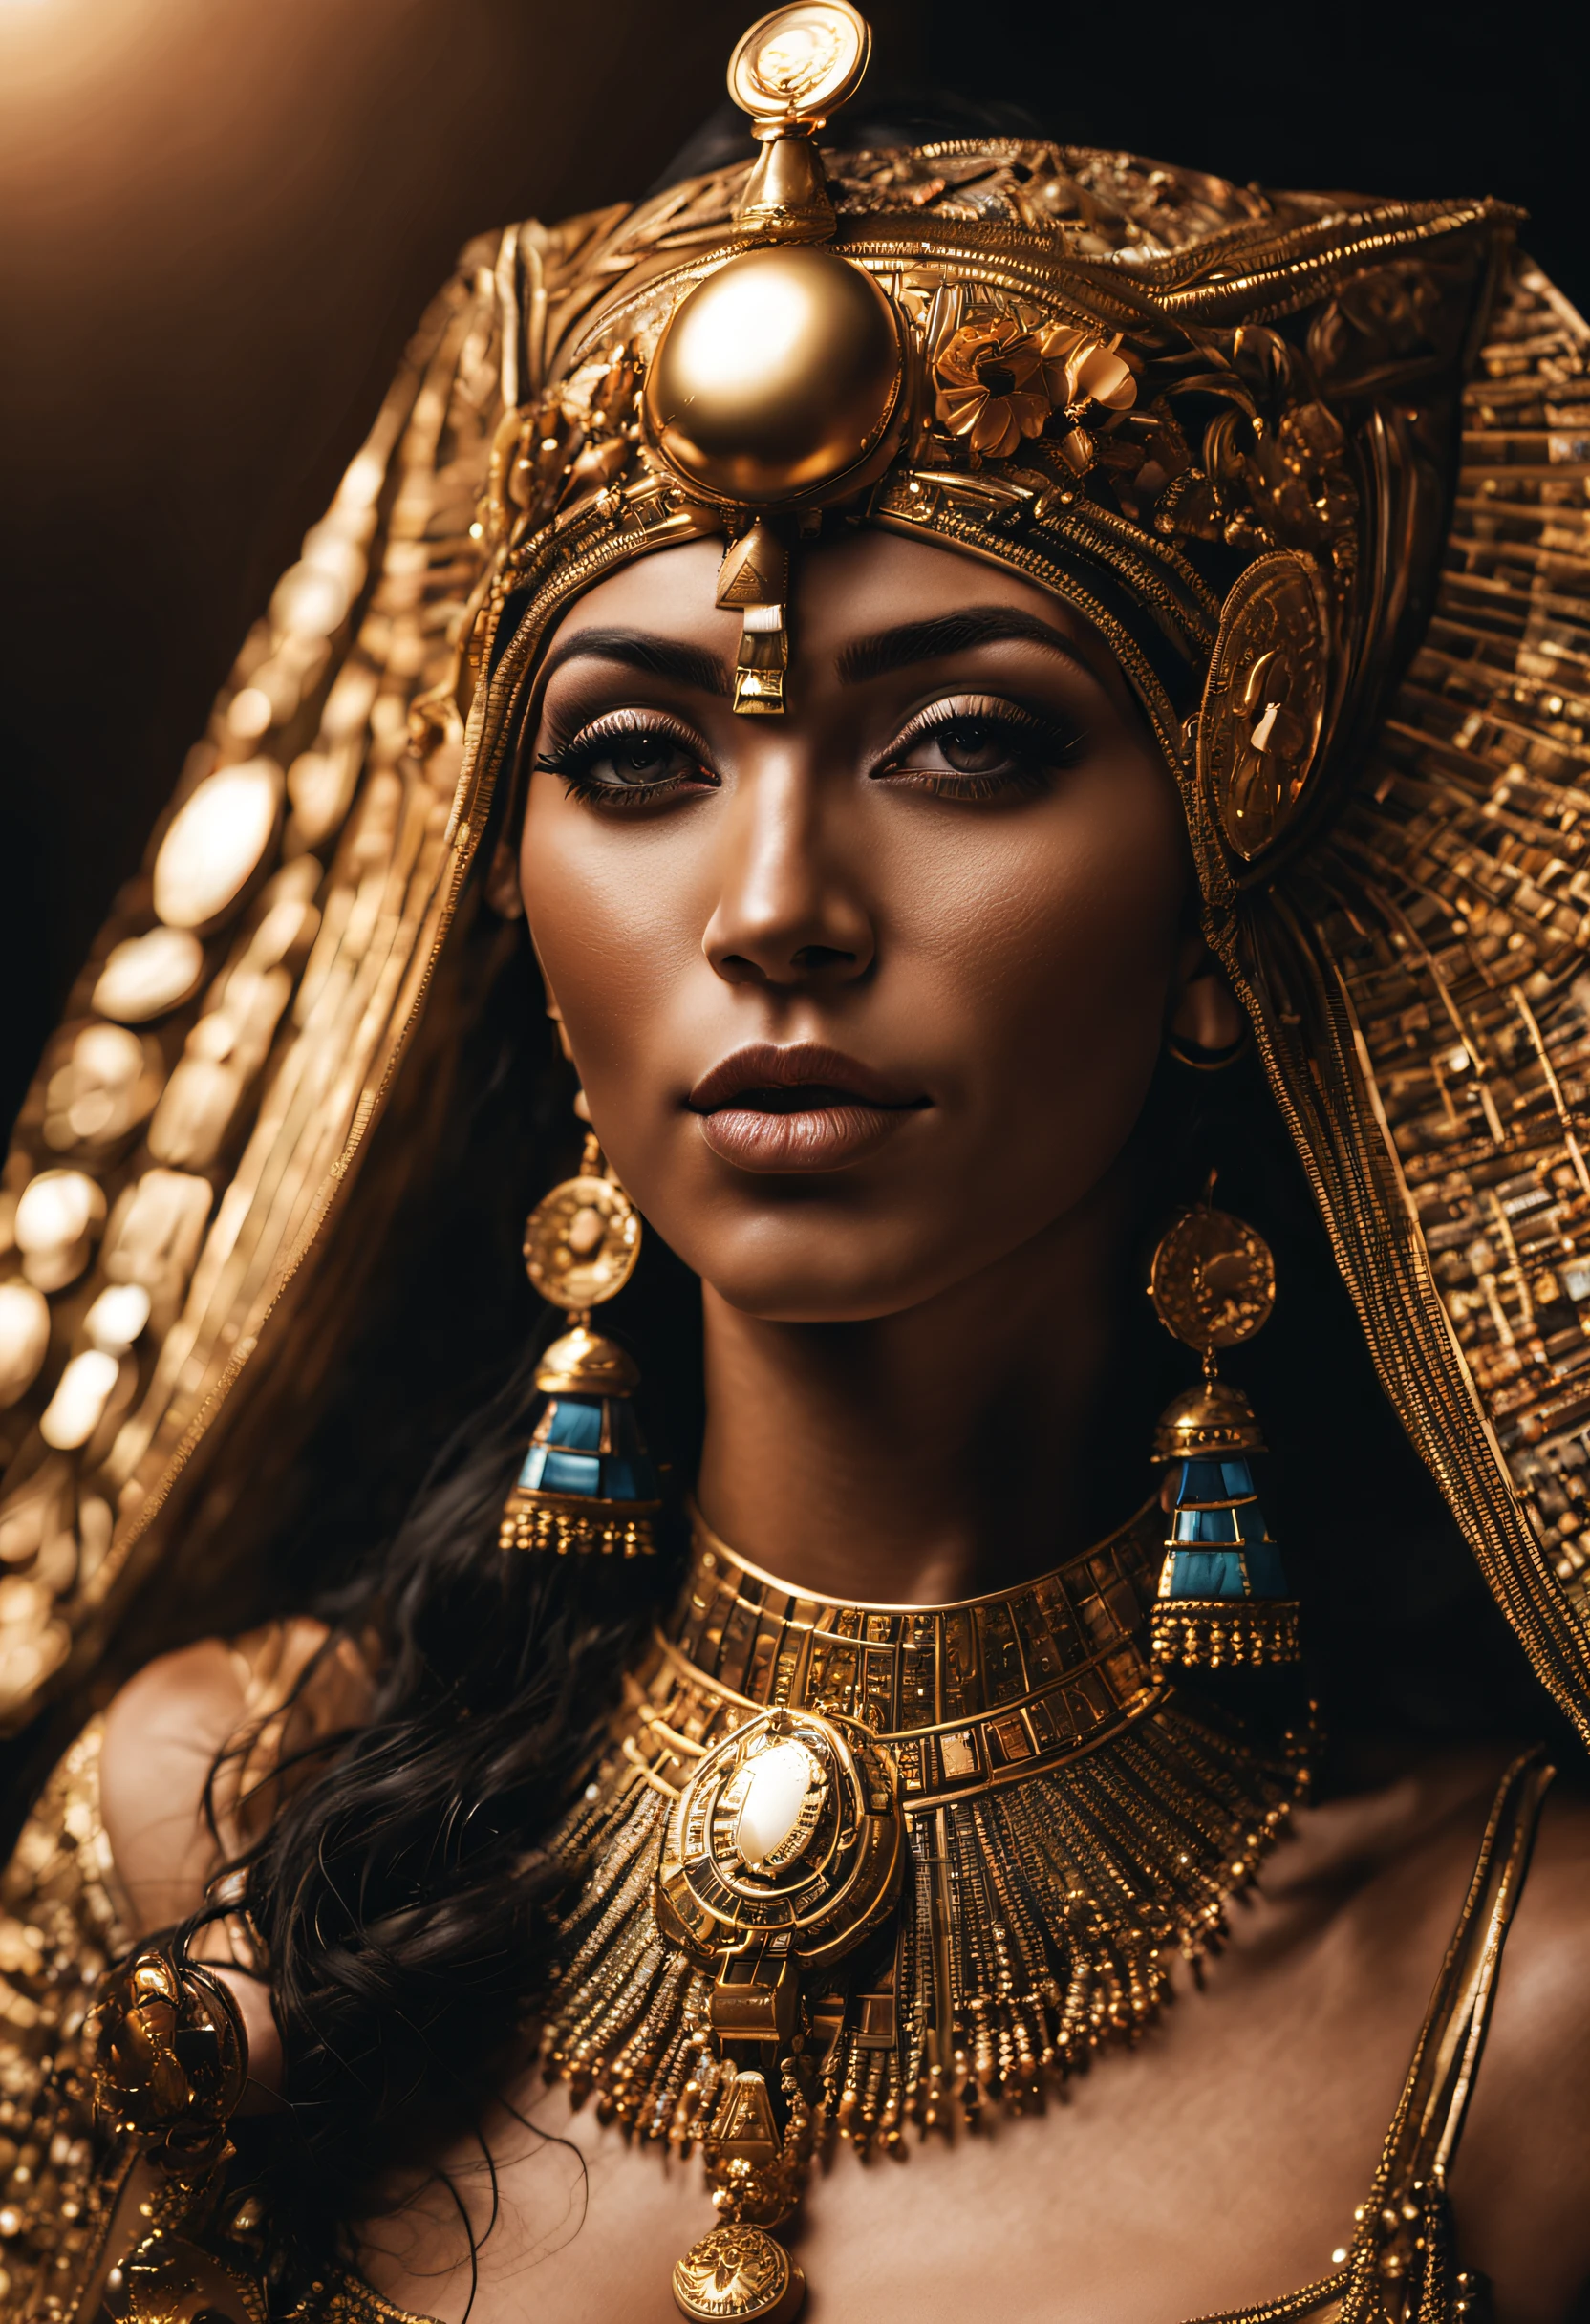 克利奥帕特拉, a Rainha do 埃及, ((全身: 1,2)), ((细致的浅色皮肤: 1,2)), (极其美丽和细致的脸: 1,2), (对称脸: 1,2) , (超细致的皮肤: 1.2), 穿着 Cleopatra&#39;金色头盔, 珠宝和黄金, 高分辨率, 主部件, 完美照明, 花, 夜晚, 黑暗的, 电影灯光, 稍稍升高的黄昏, 成人, 完美肌肤, 女士 , 看着观众, 肖像, 上半身, 纯色背景, ((埃及:1,2)), 黑色背景, (雷西玛:1.5), (不是:1.2), 不是, 乳房, 乳头, 单独的条带, 雀斑, 详细的头发, 感性的外观, 微笑,